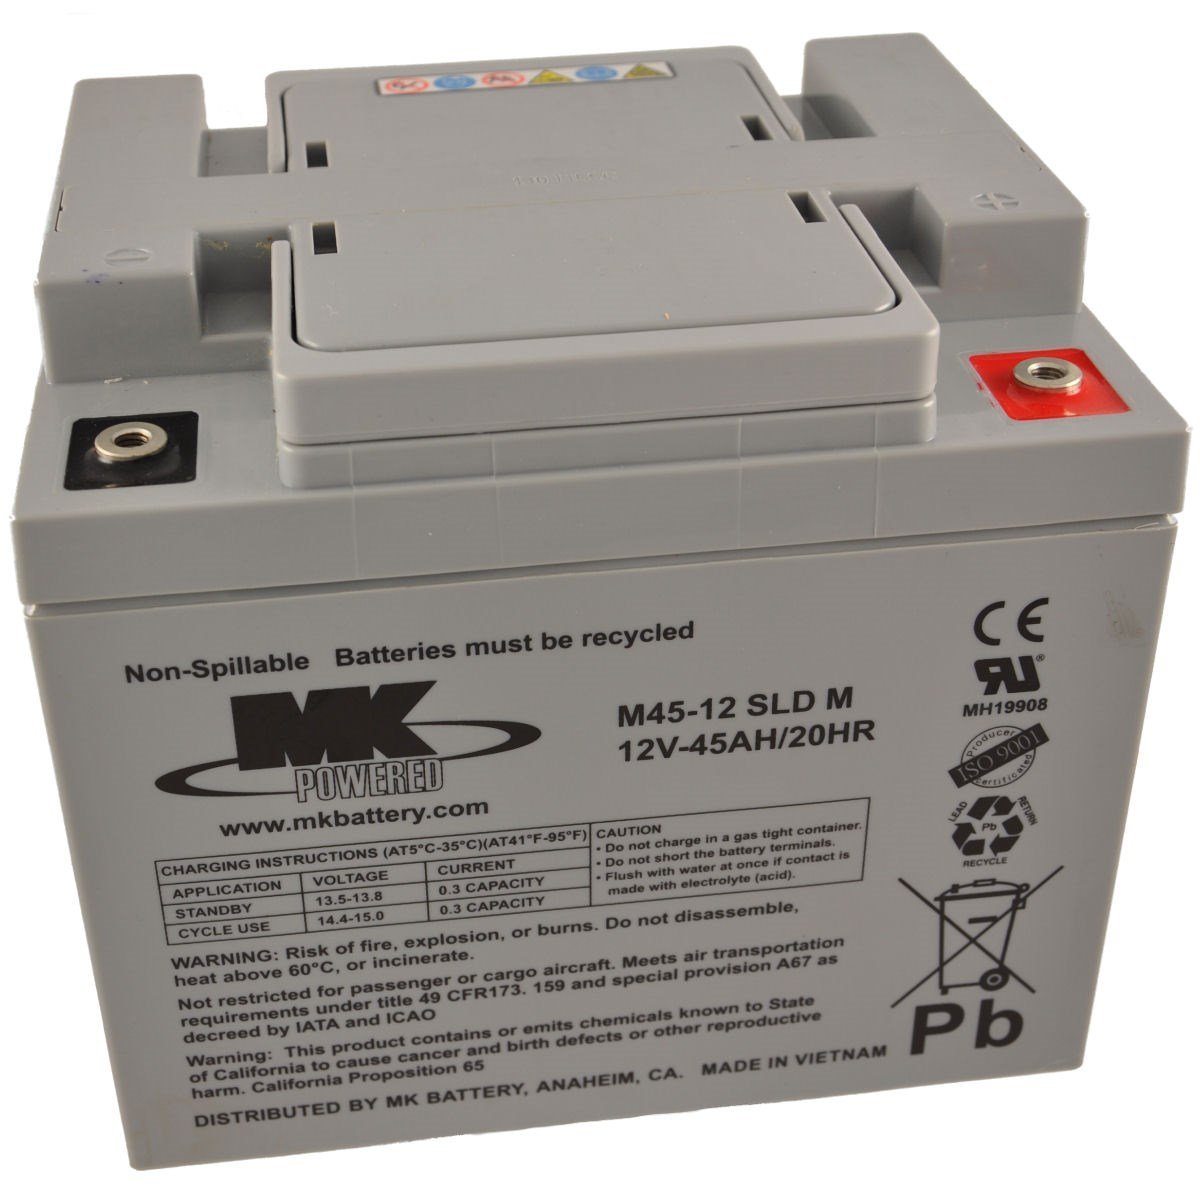 Solite Cmf Japanese Box CMF54584 Batterie. 45Ah - 400A(EN) 12V, batterie  12v 45ah 